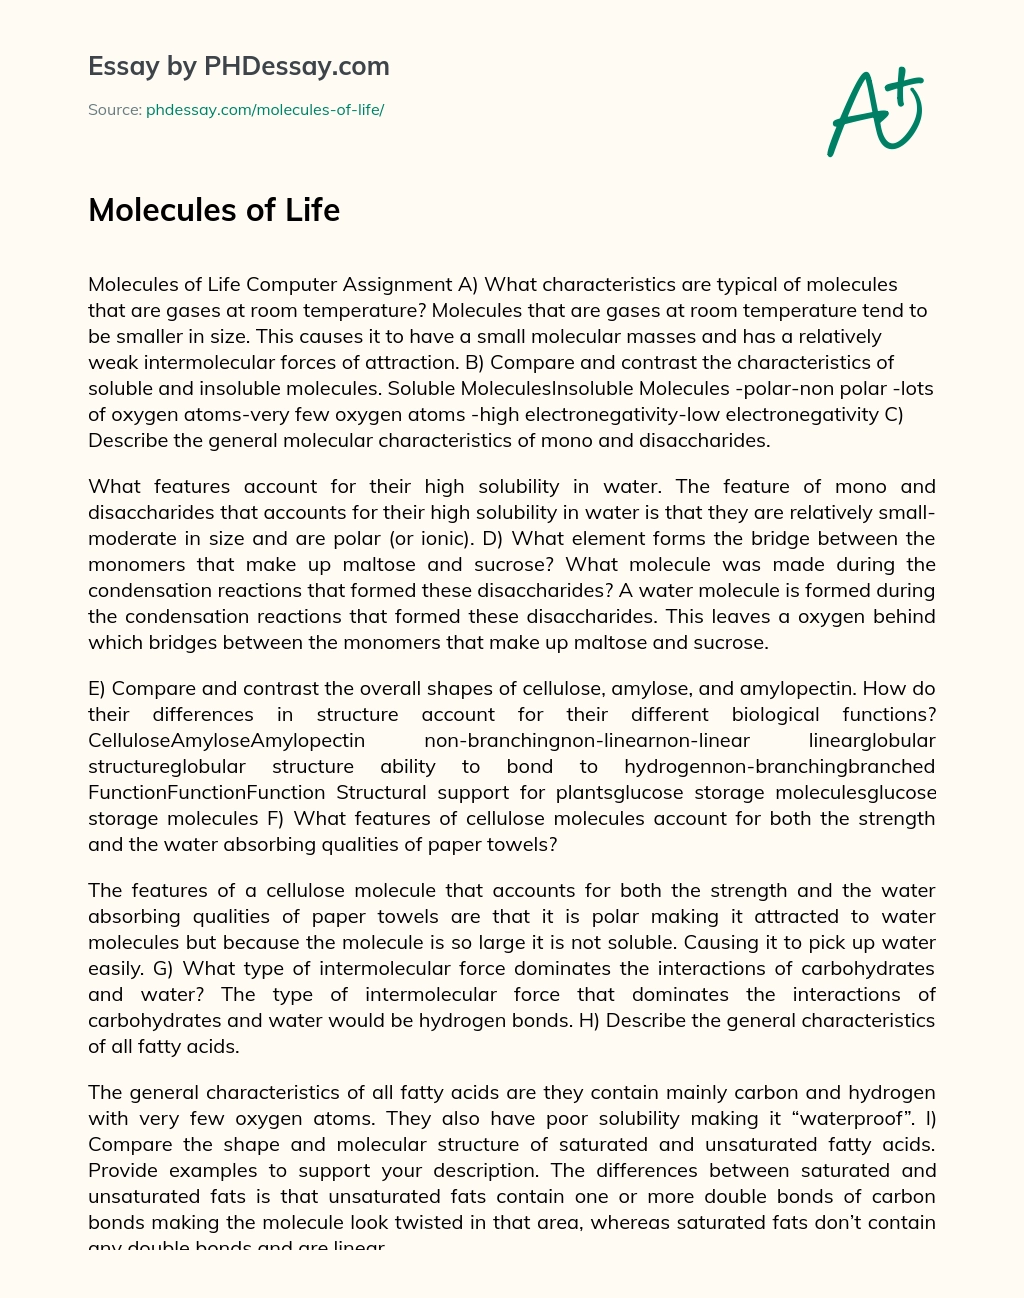 Molecules of Life essay